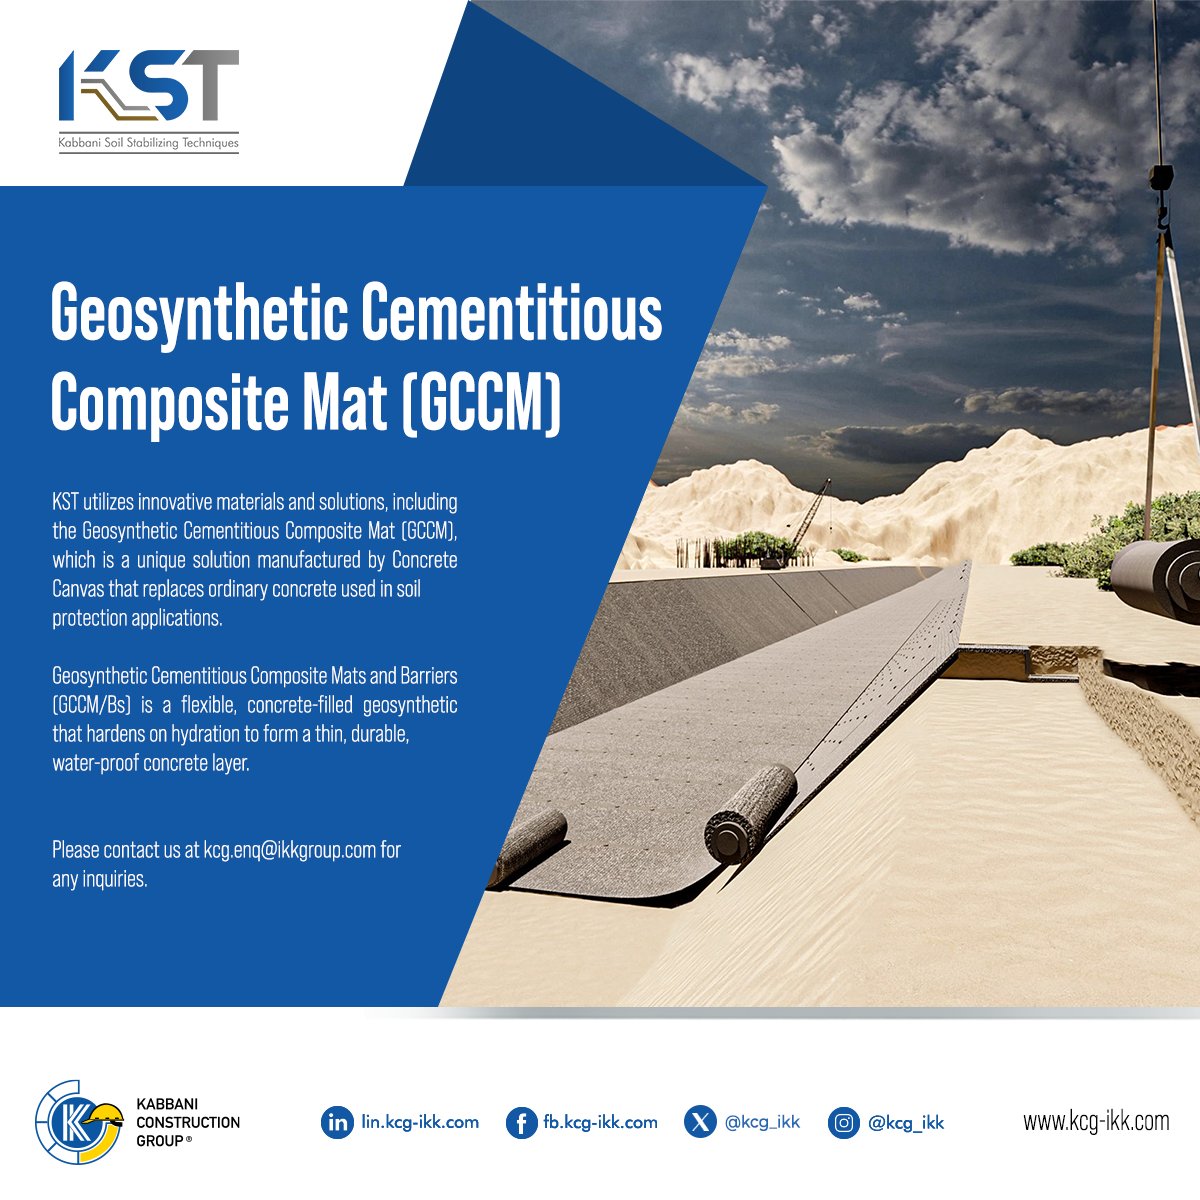 تقدم شركة كي اس تي خدمات الخرسانة الجيوسنتيكية المركبة (GCCM) ضمن حلول تعزيز التربة التي توفرها.

KST, one of KCG Group's companies, provides Geosynthetic Cementitious Composite Mat (GCCM) services among its list of Soil Stabilization solutions.

#KCG #KST #SoilStabilization